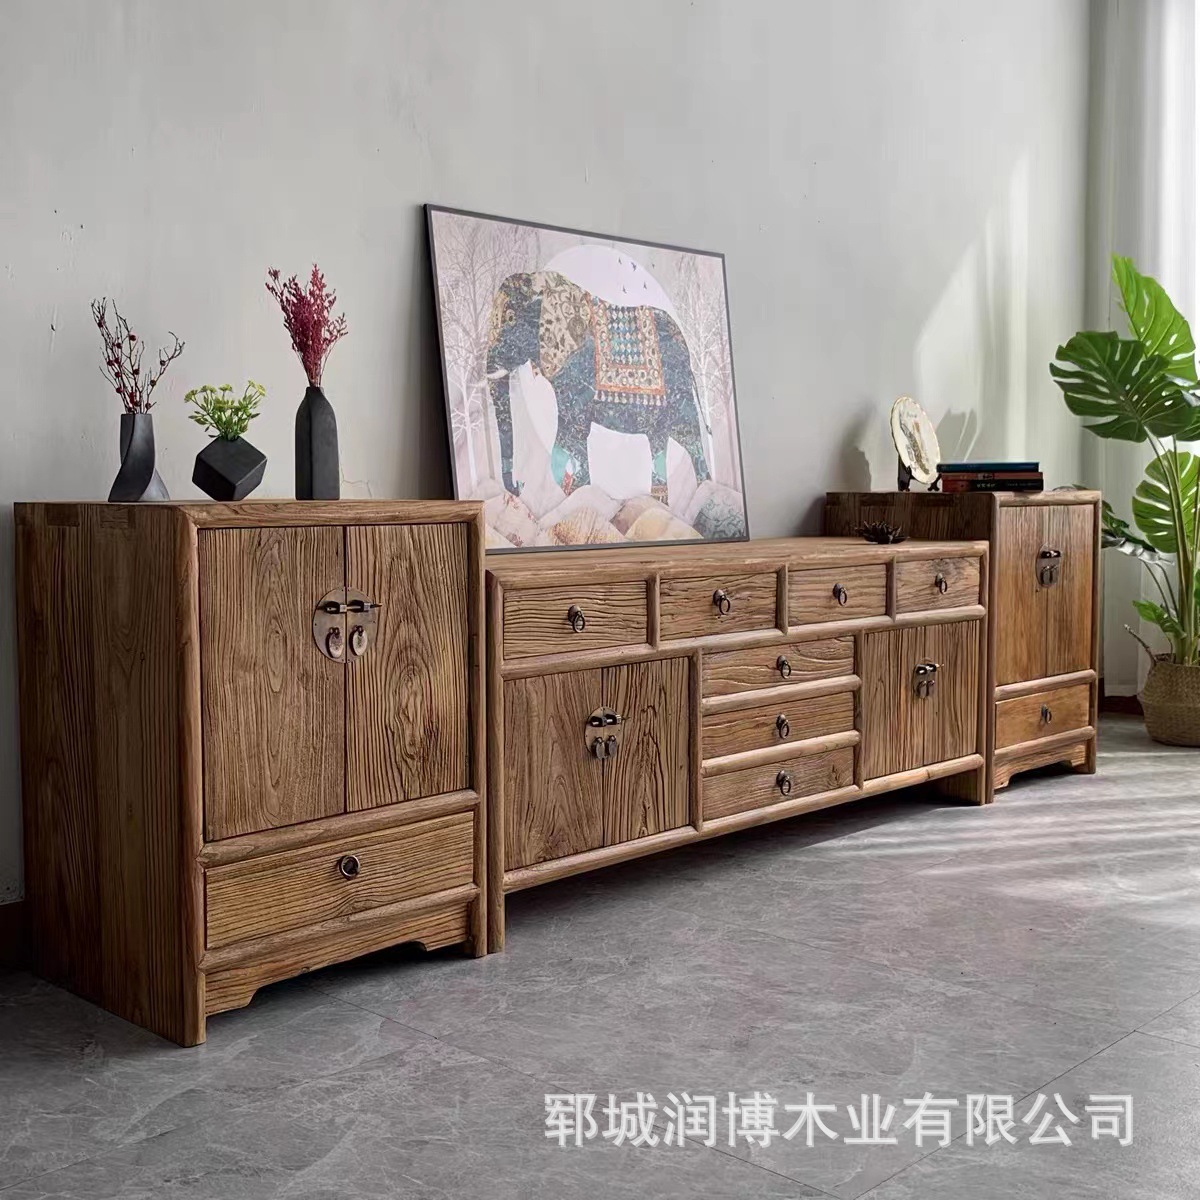 新中式老榆木电视柜客厅视听收纳柜背景矮柜落地柜禅意实木家具